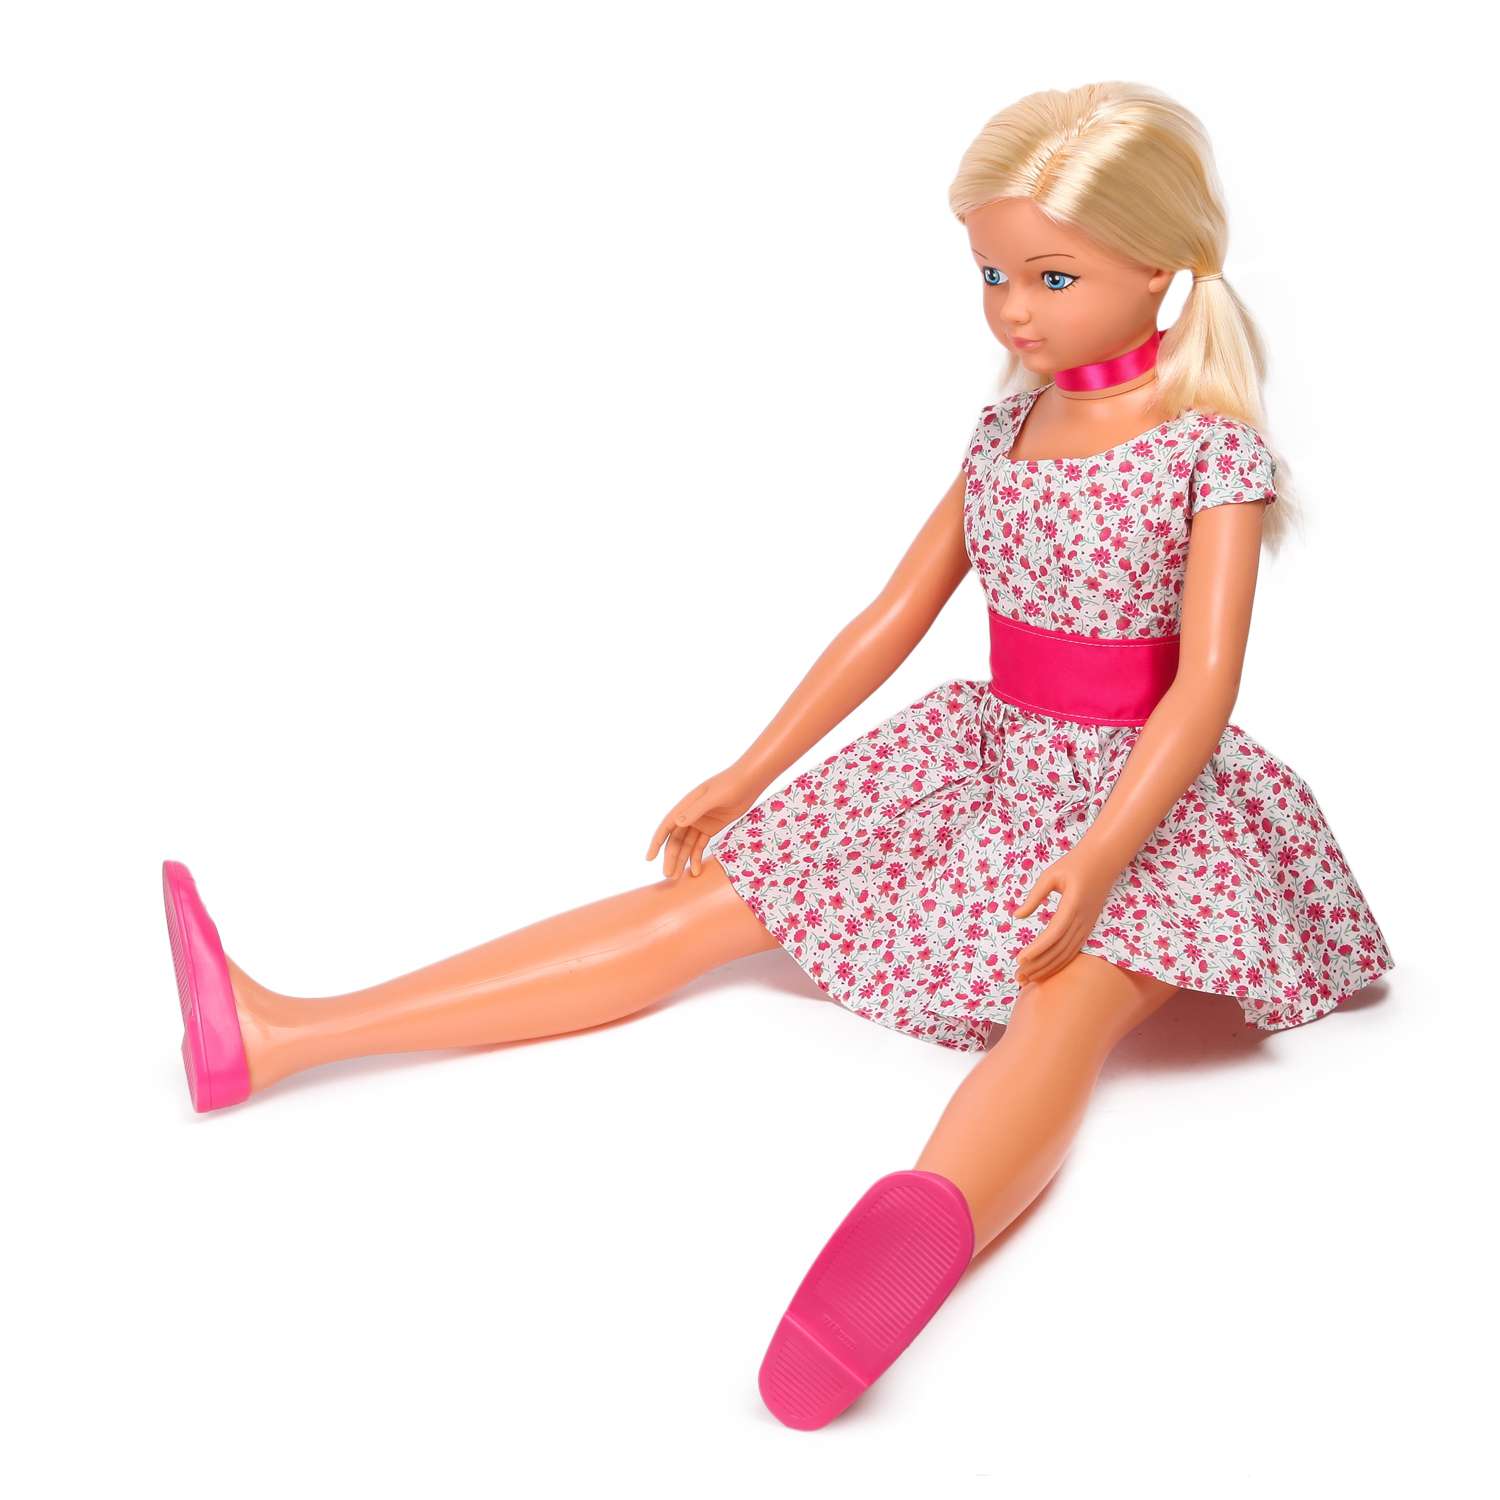 Кукла ростовая Demi Star Амелия в розовом платье 987/Rose 987/Rose - фото 4